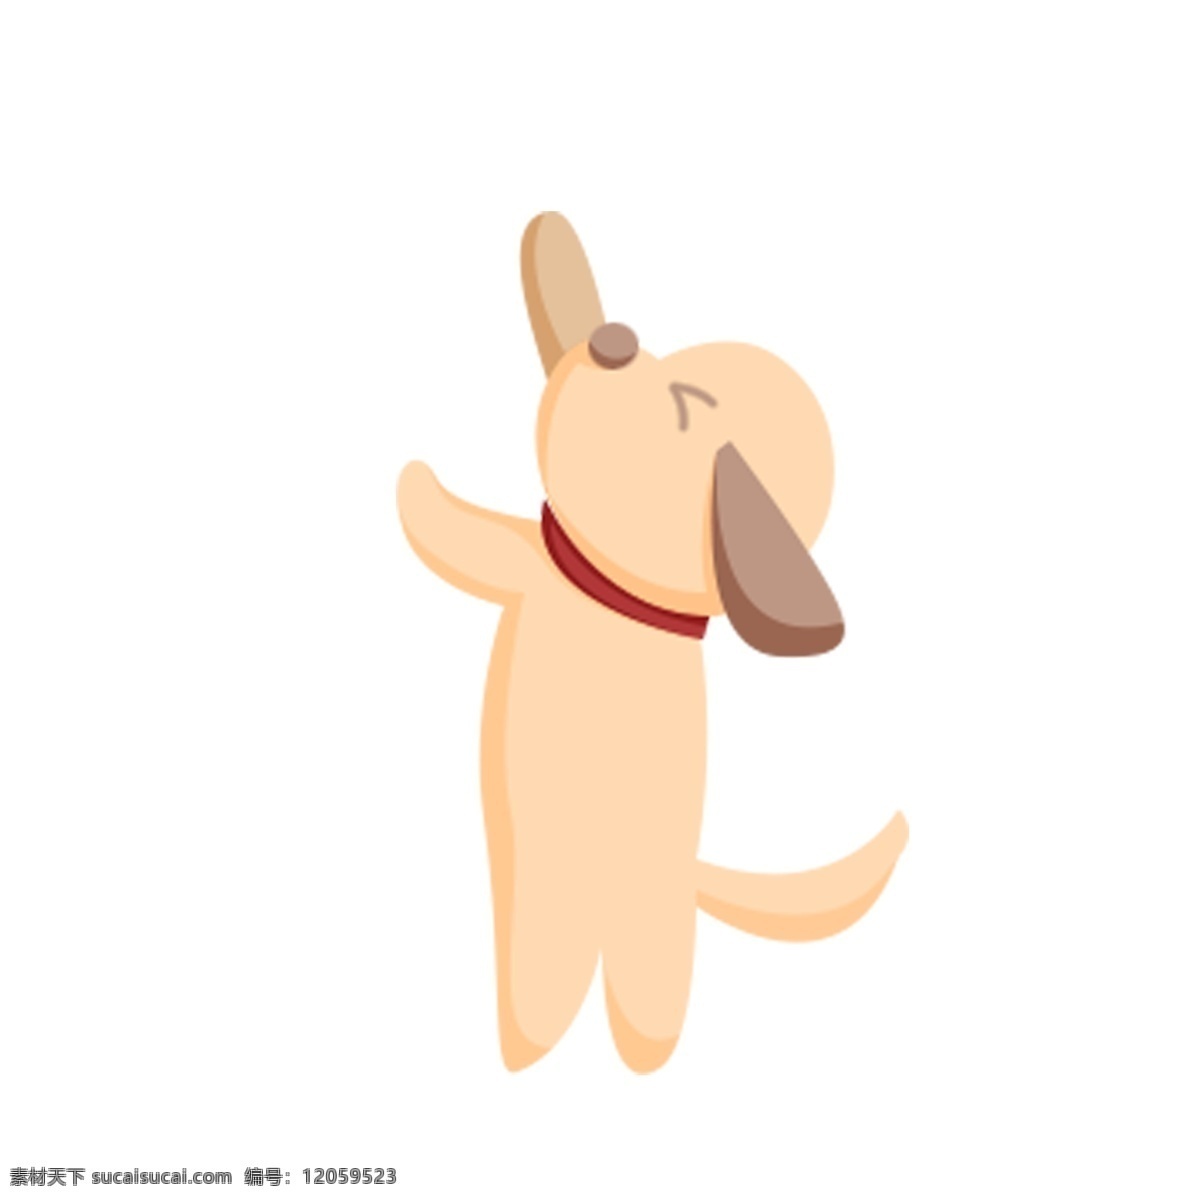 卡通 可爱 小狗 免 抠 图 宠物狗 卡通动物 动物插画 小狗狗 跳跃的小狗 宠物 狗 小动物 免抠图